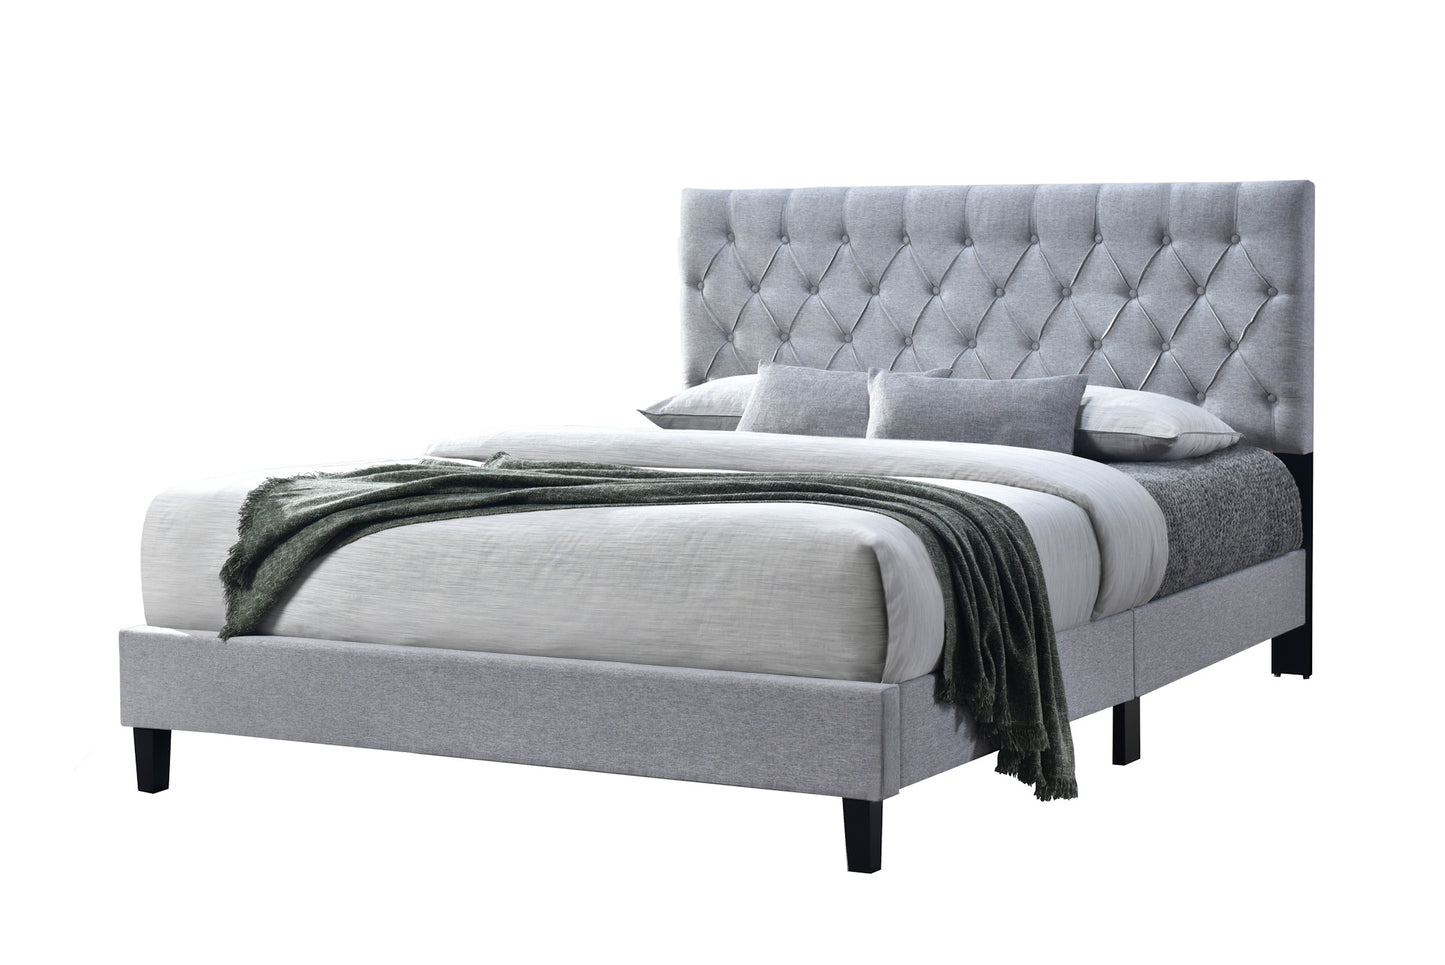 New York Bed (Queen) (Fabric Grey)